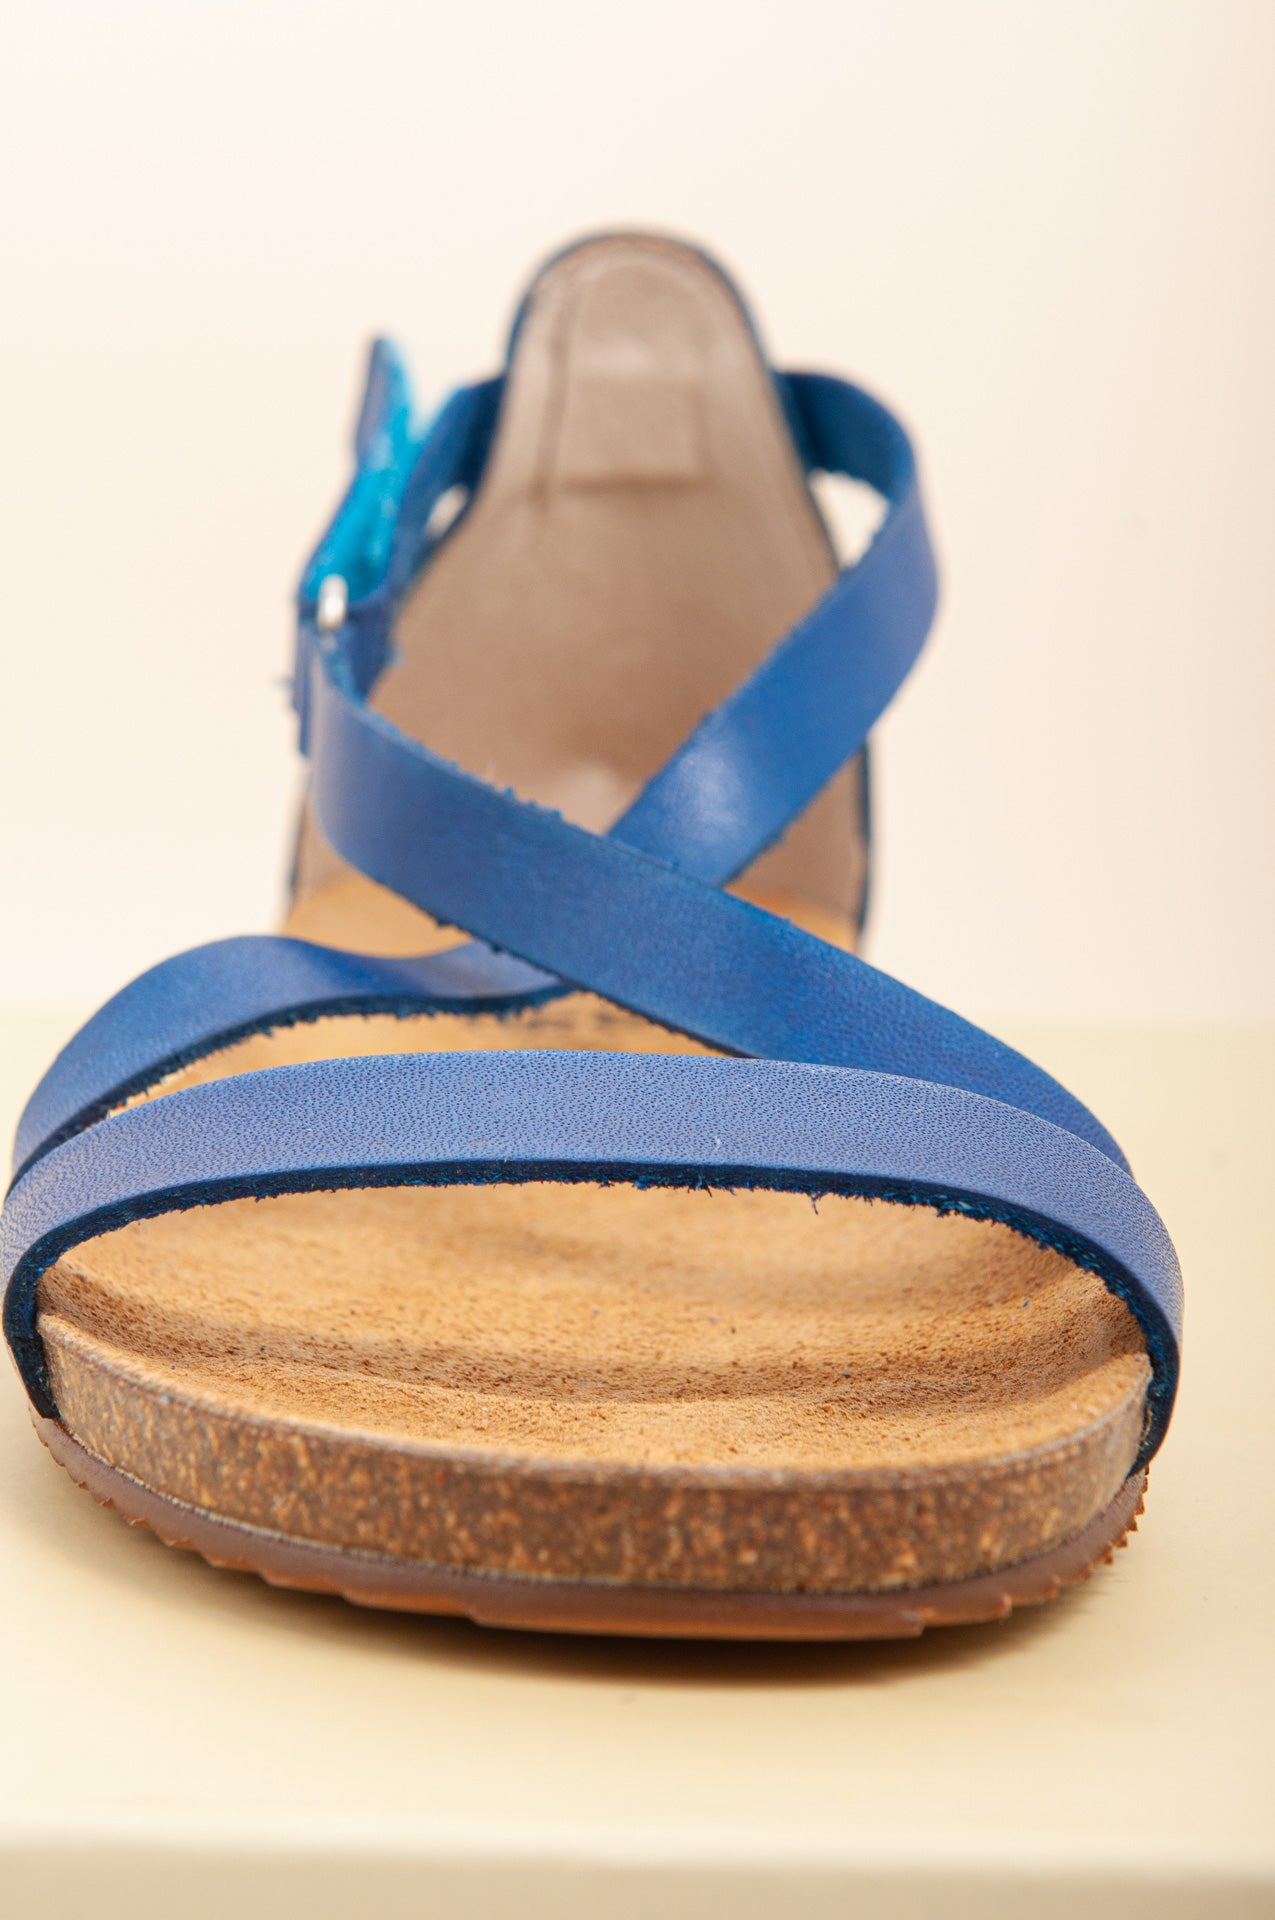 Sandalias planas de mujer cómodas para uso diario. Sandalias planas ideales para el verano.